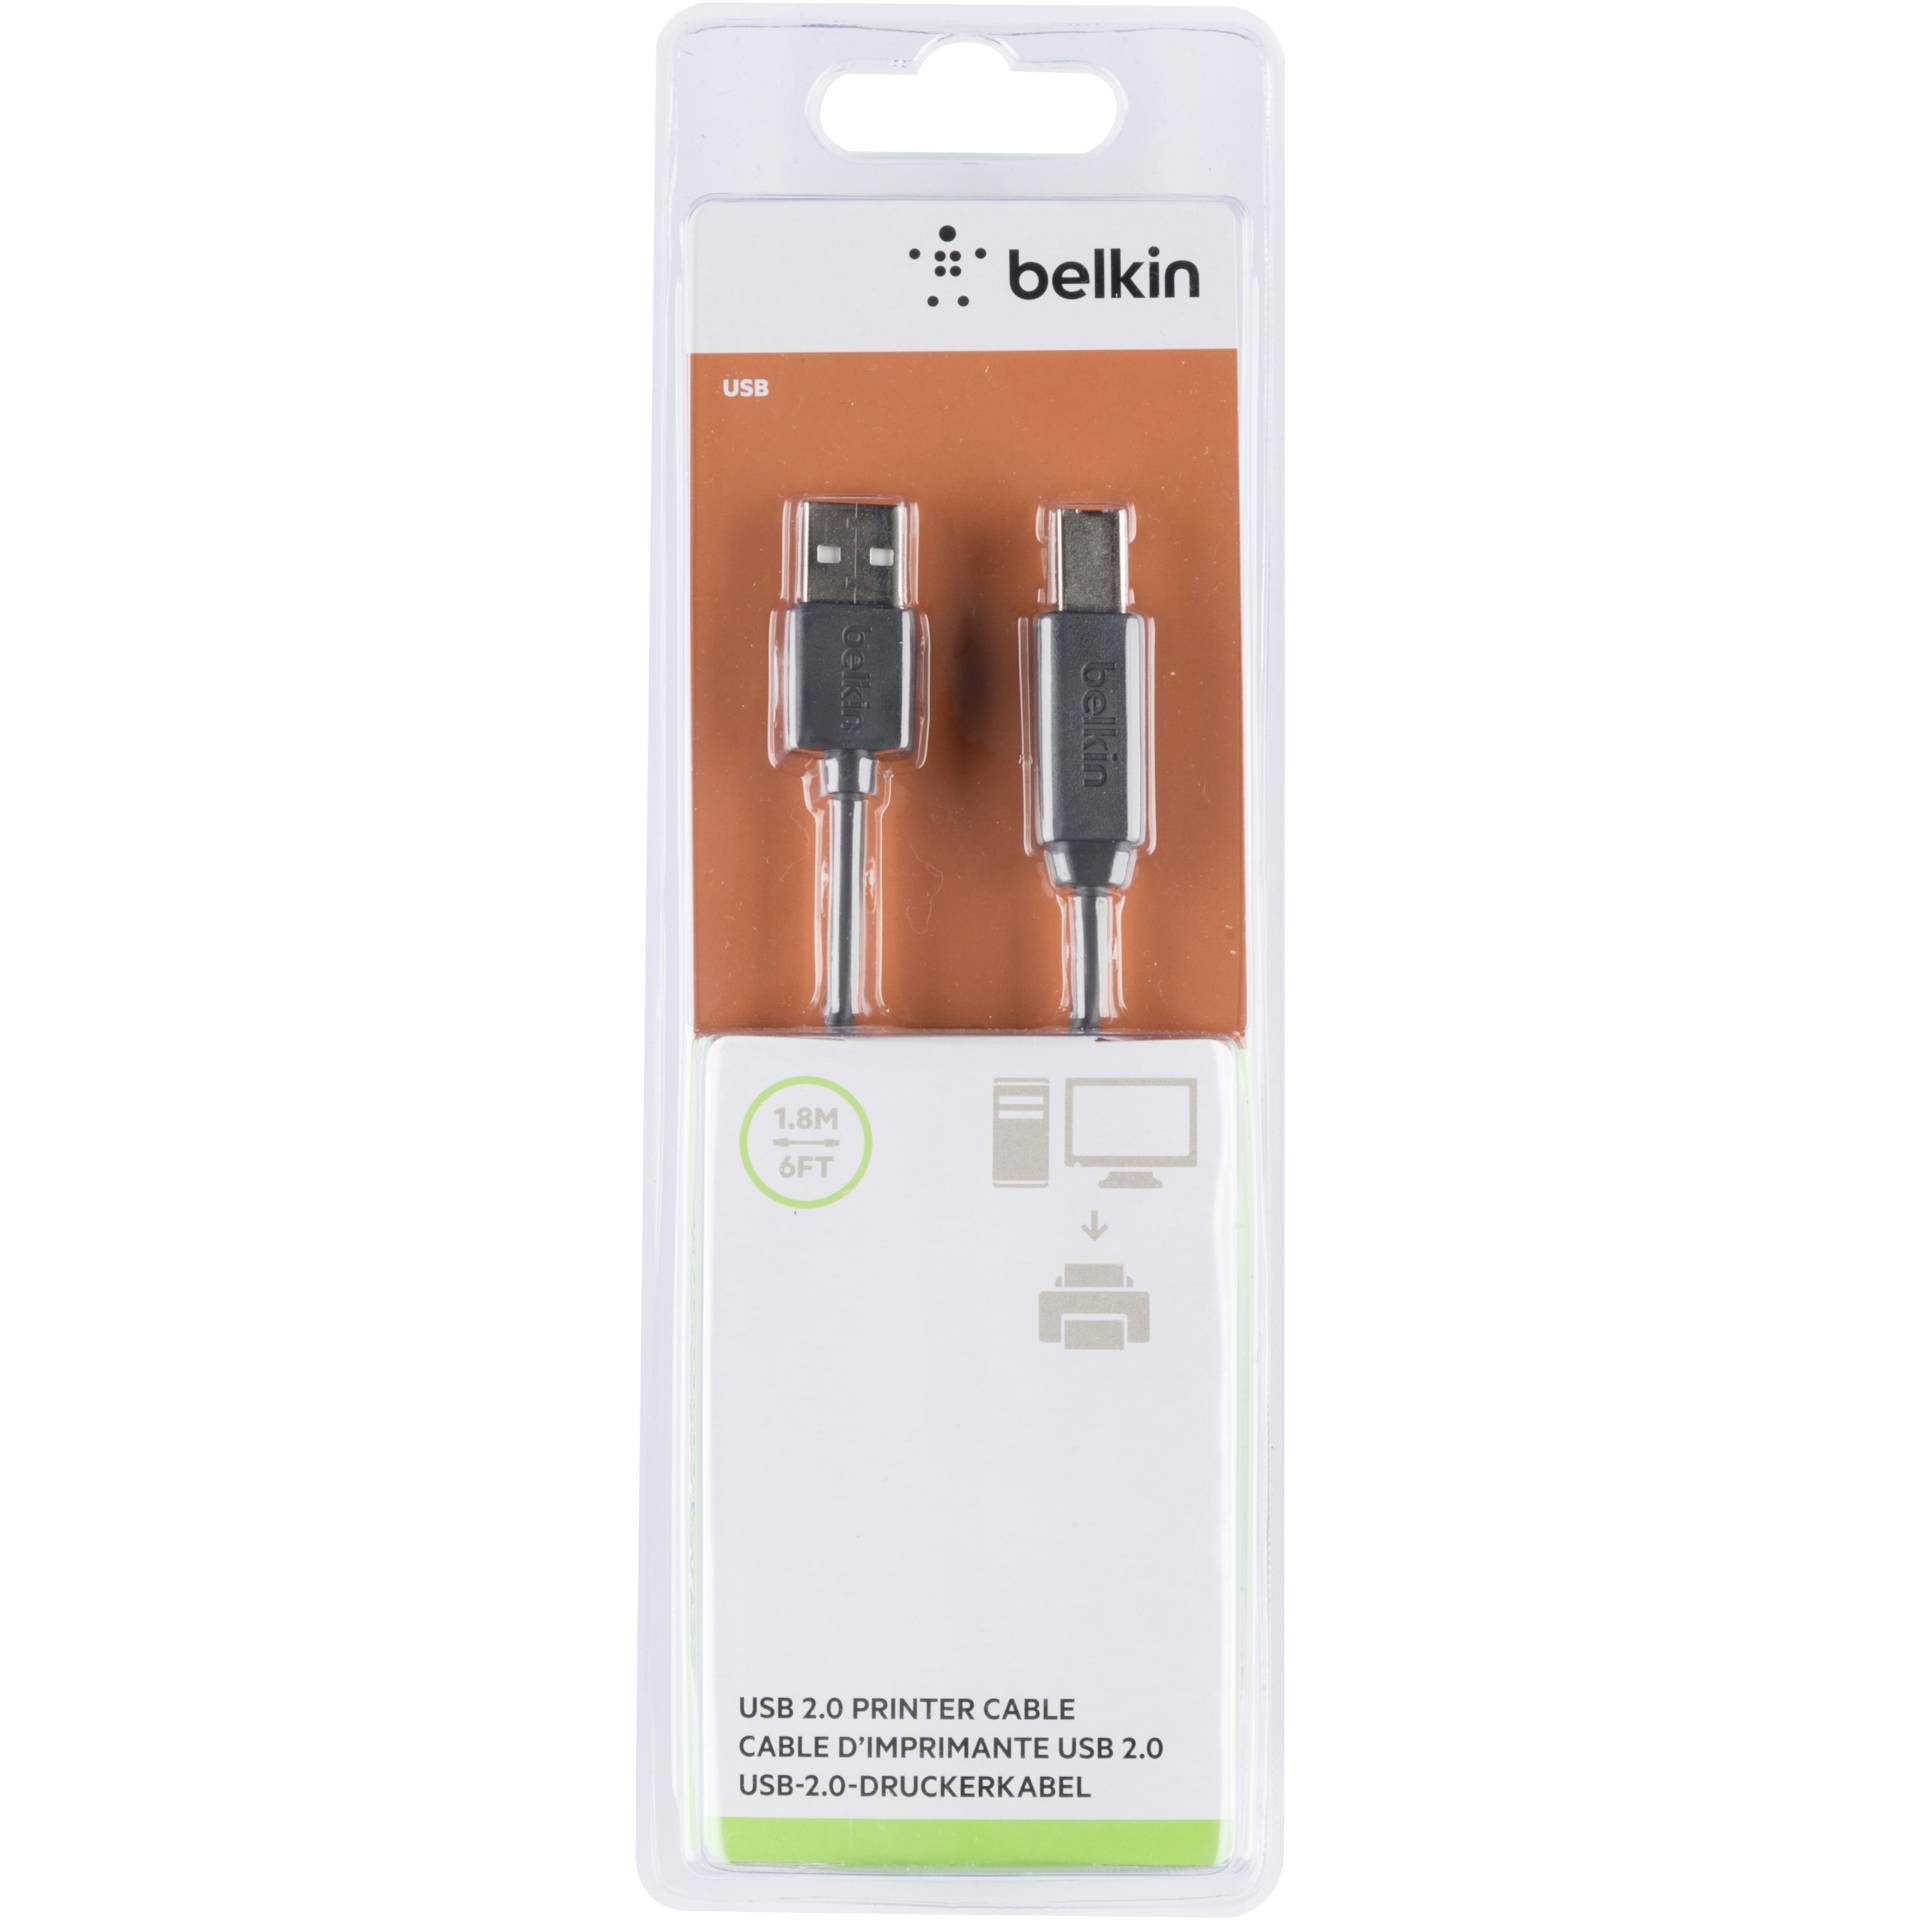 Belkin USB 2.0 Premium Drucker Kabel, USB-A / USB-B, 1,8m, sw.